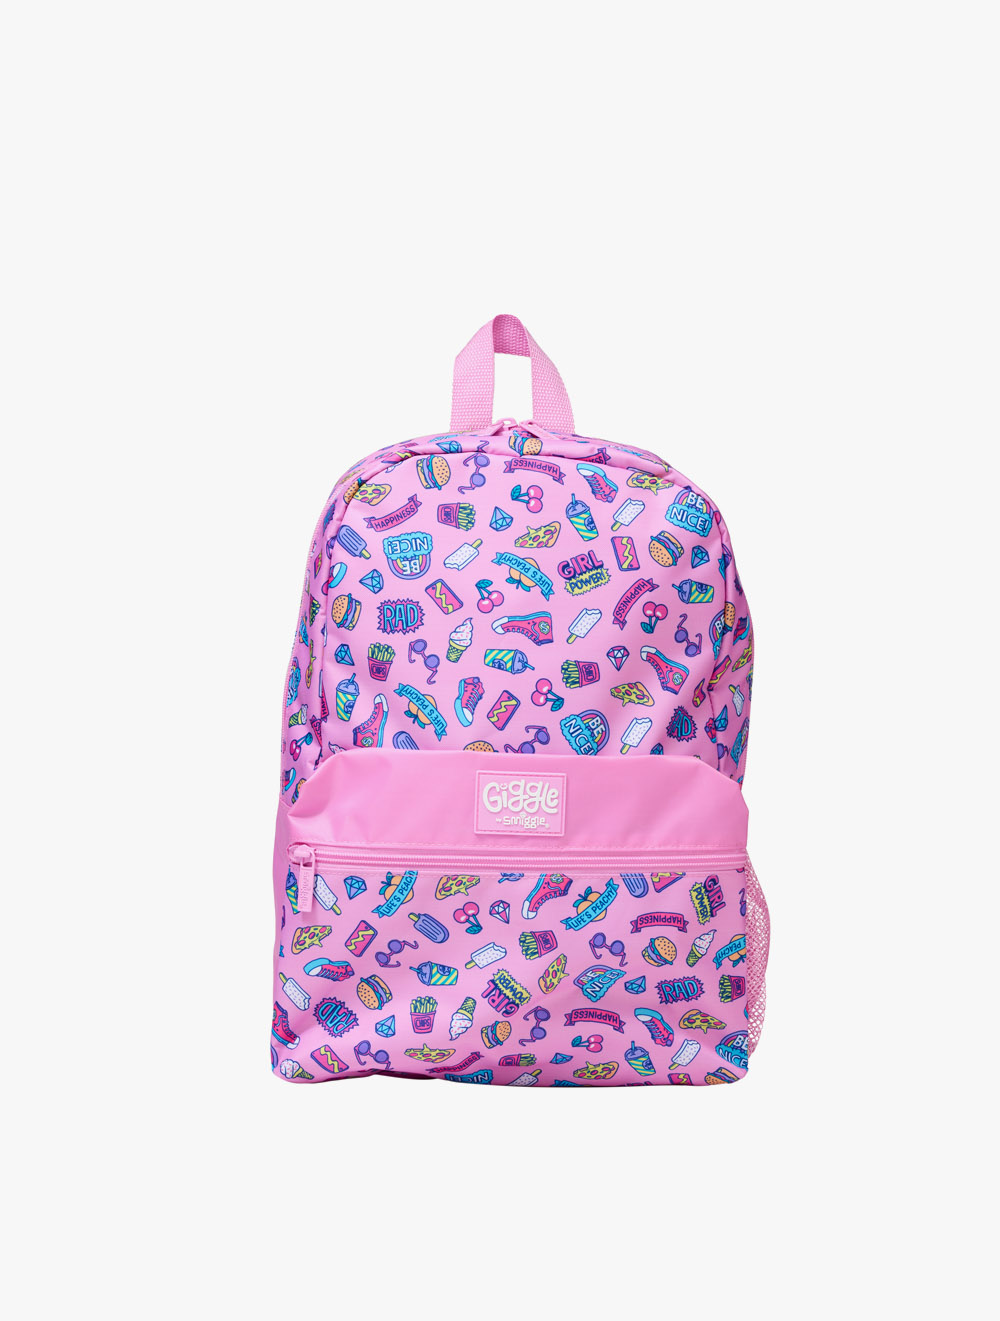 Smiggle Giggle 6 Backpack Pink - IGL448951PNK